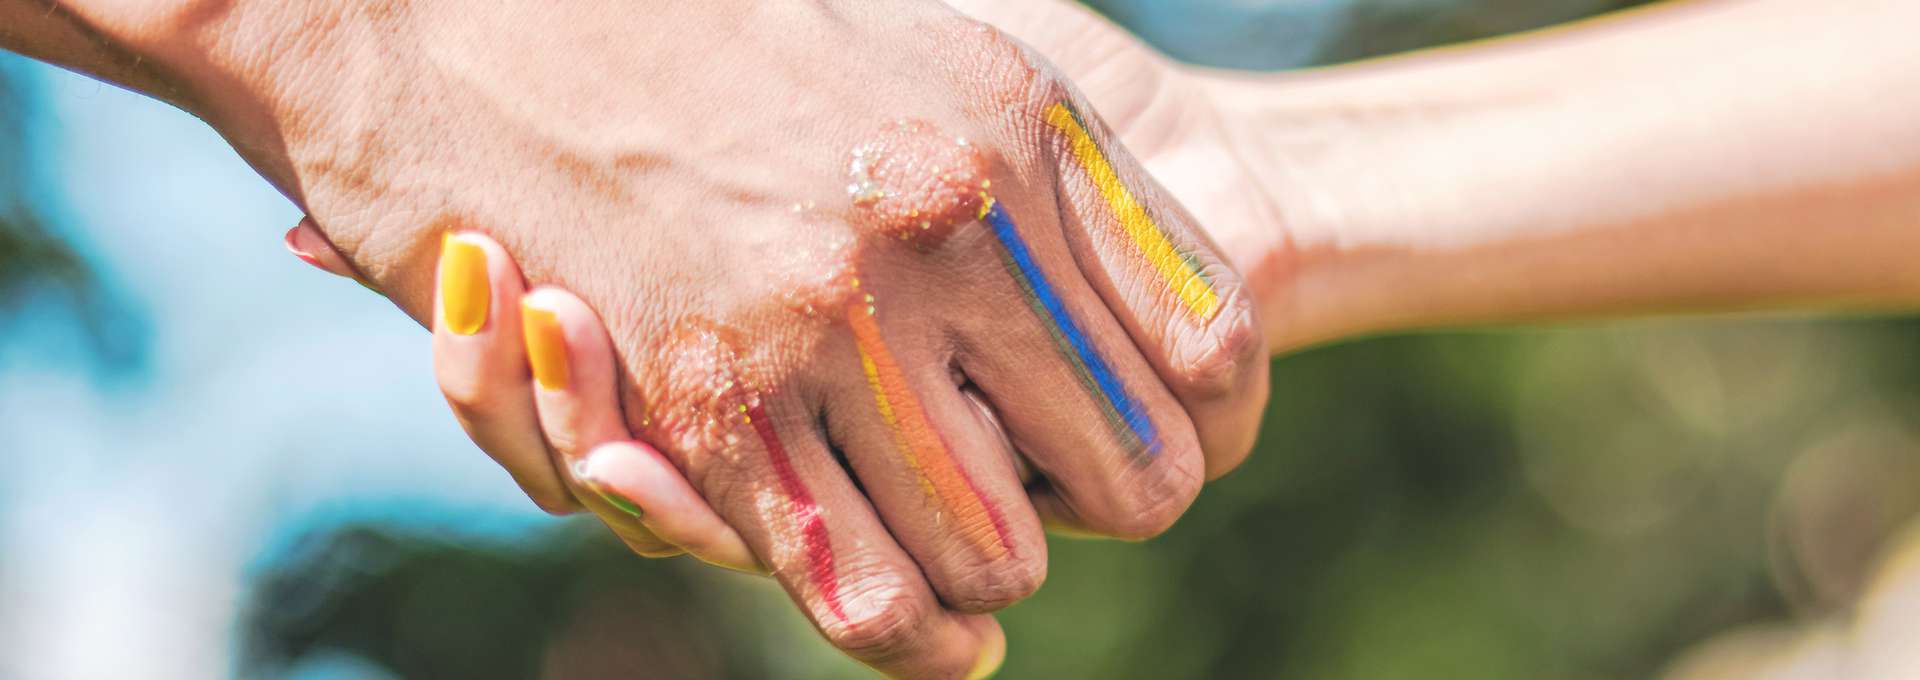 Två händer med regnbågsfärger på fingrarna som skakar hand